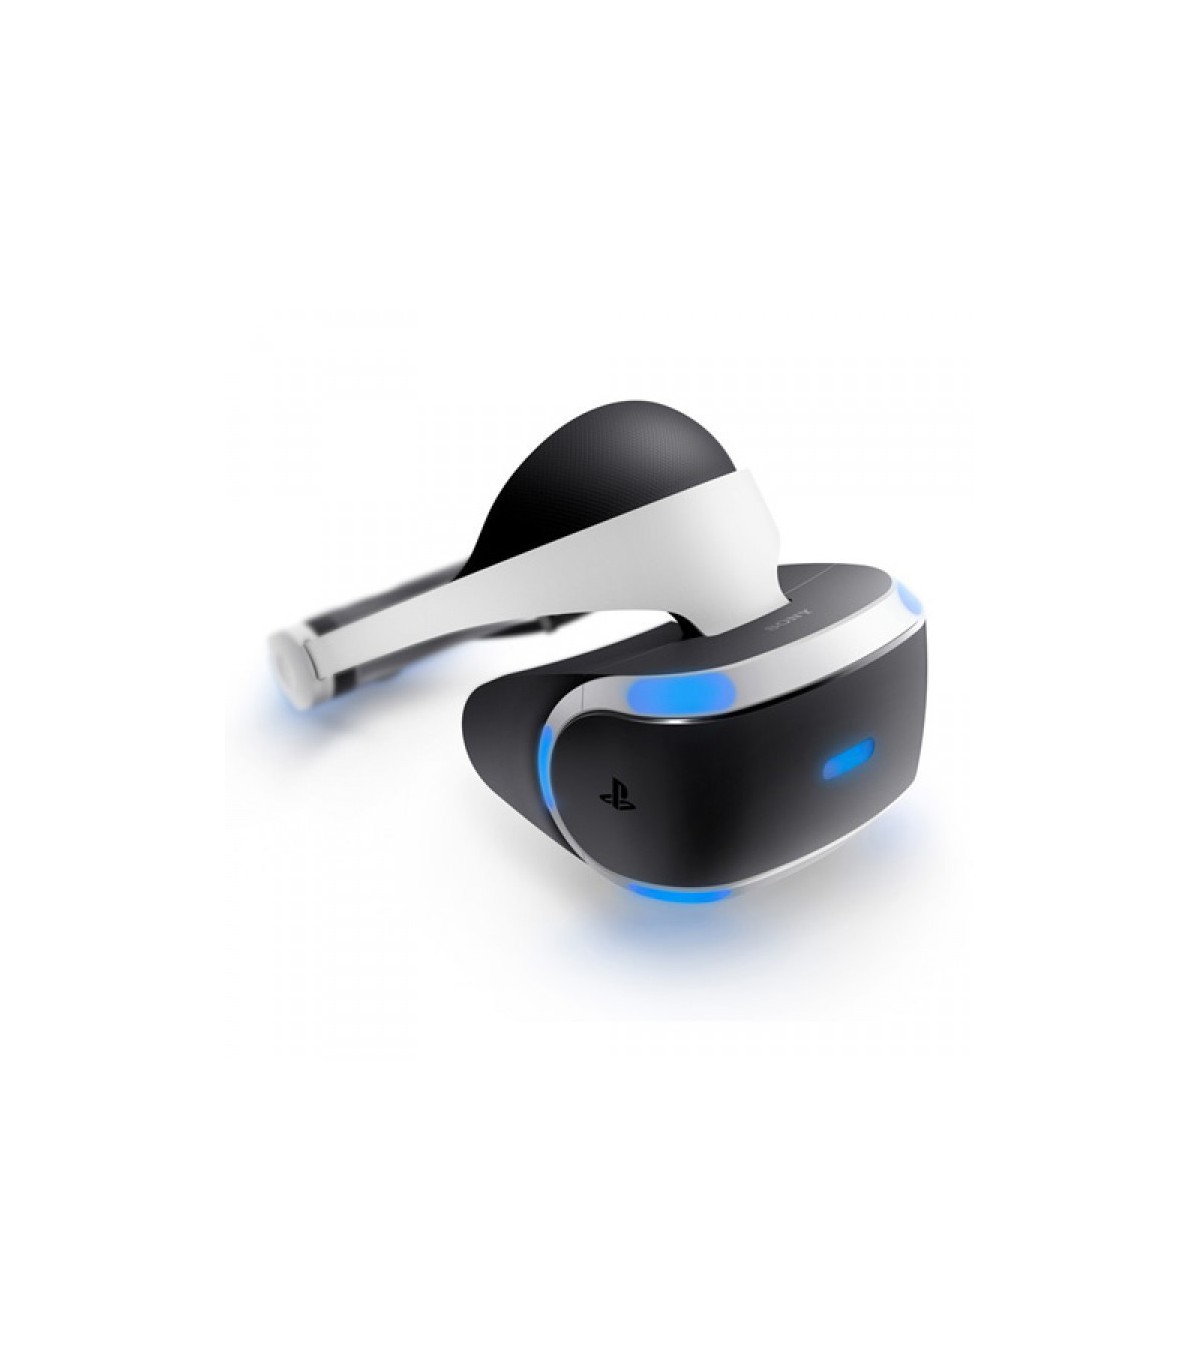 Sony PlayStation VR کارکرده (دست دوم)